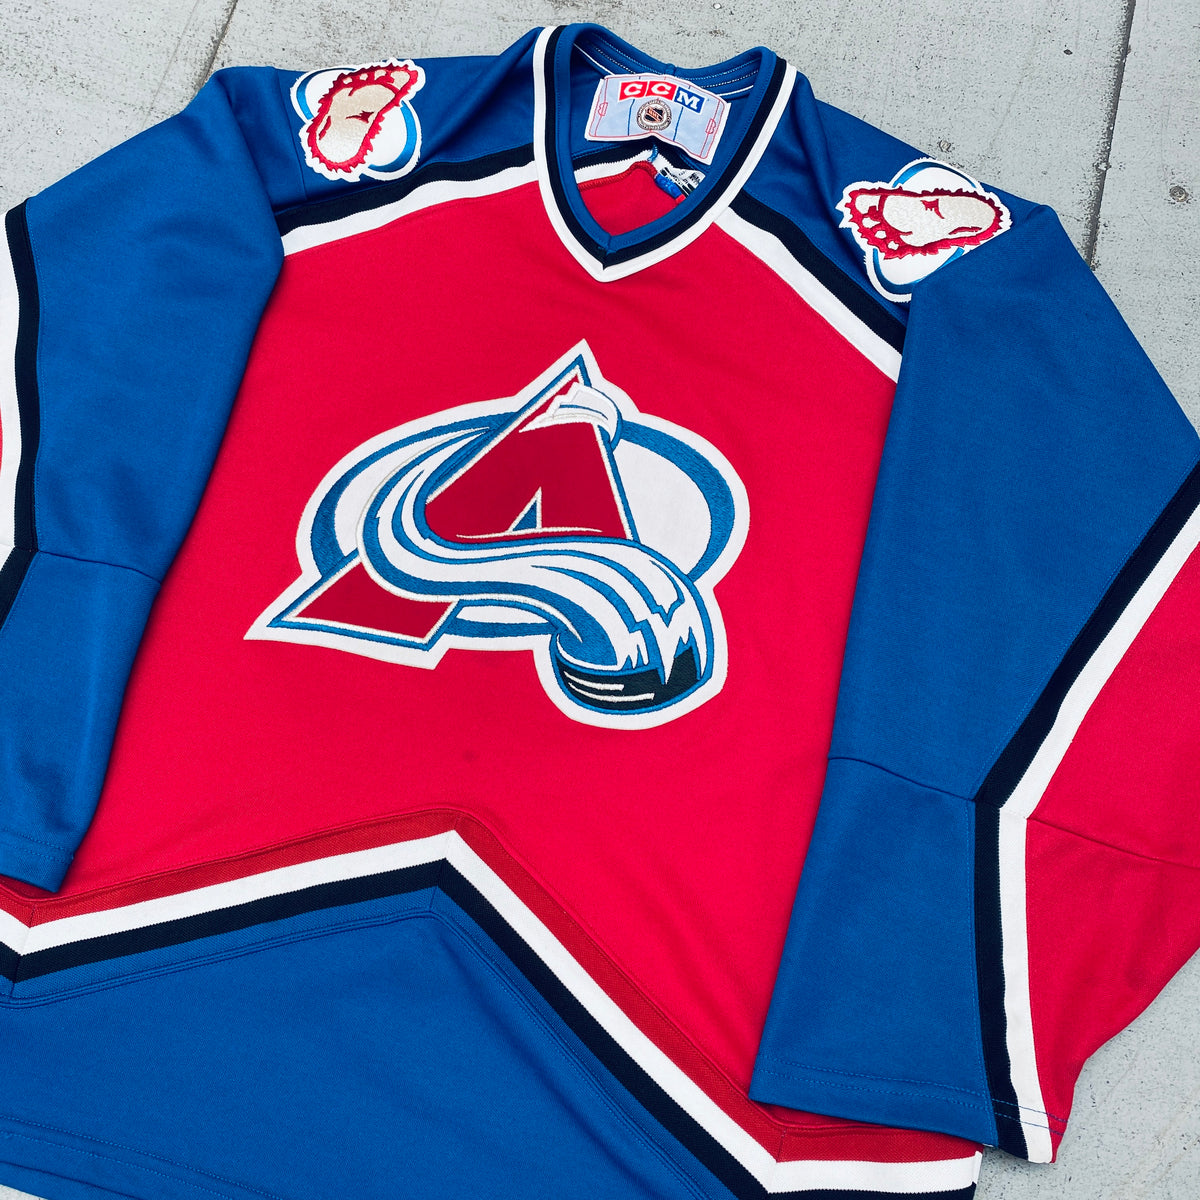 Colorado Avalanche: 1997 CCM Jersey (L) – National Vintage League Ltd.